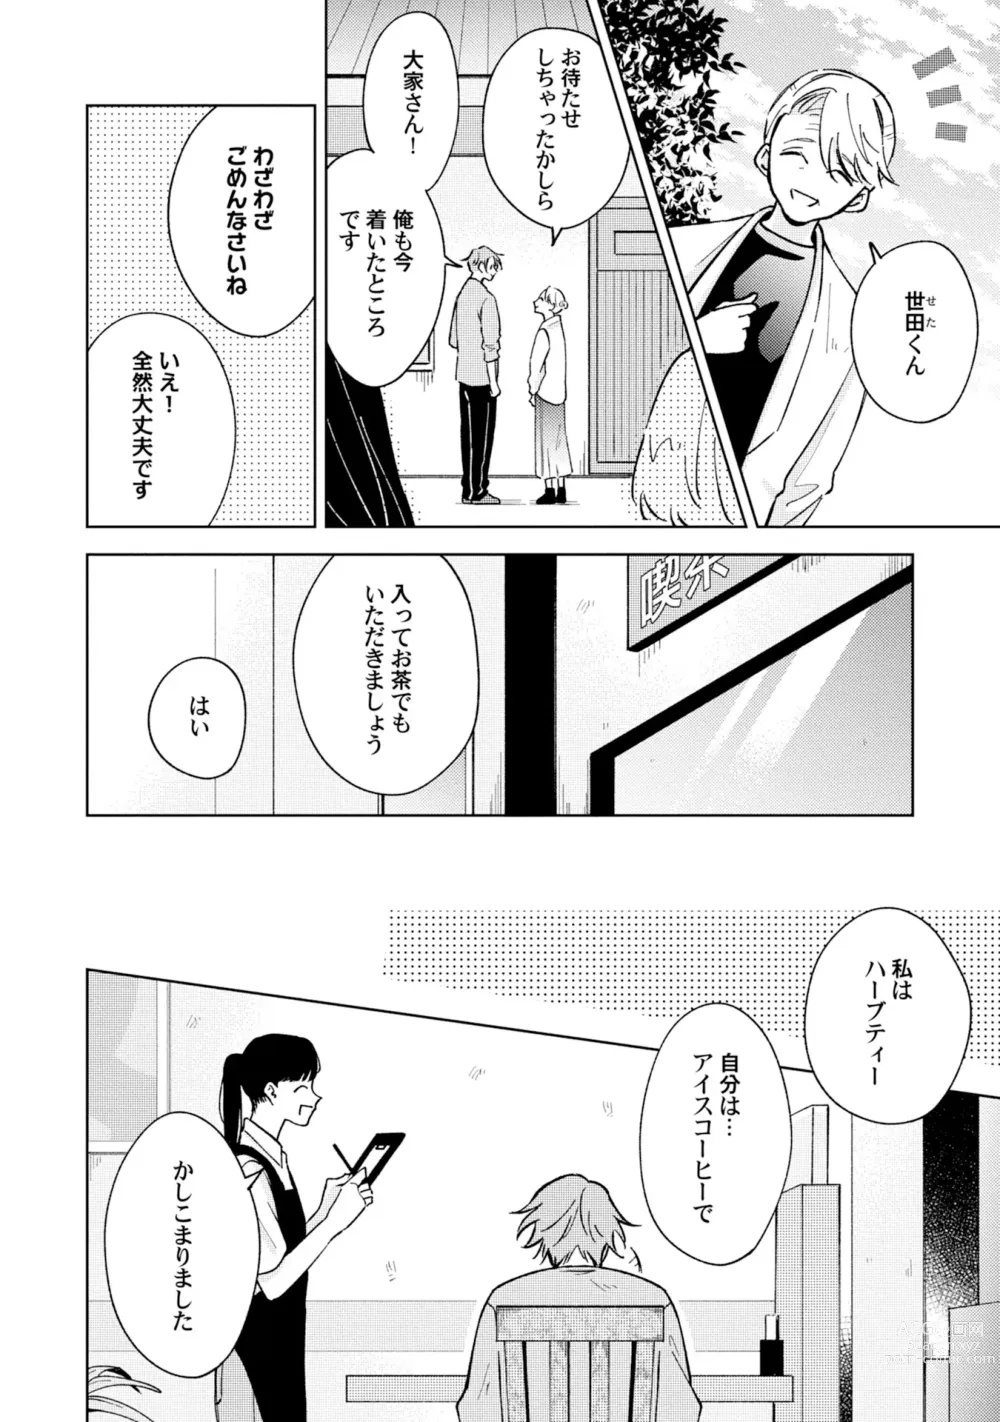 Page 10 of manga Toho 3-byou no Trouble Love Room 5